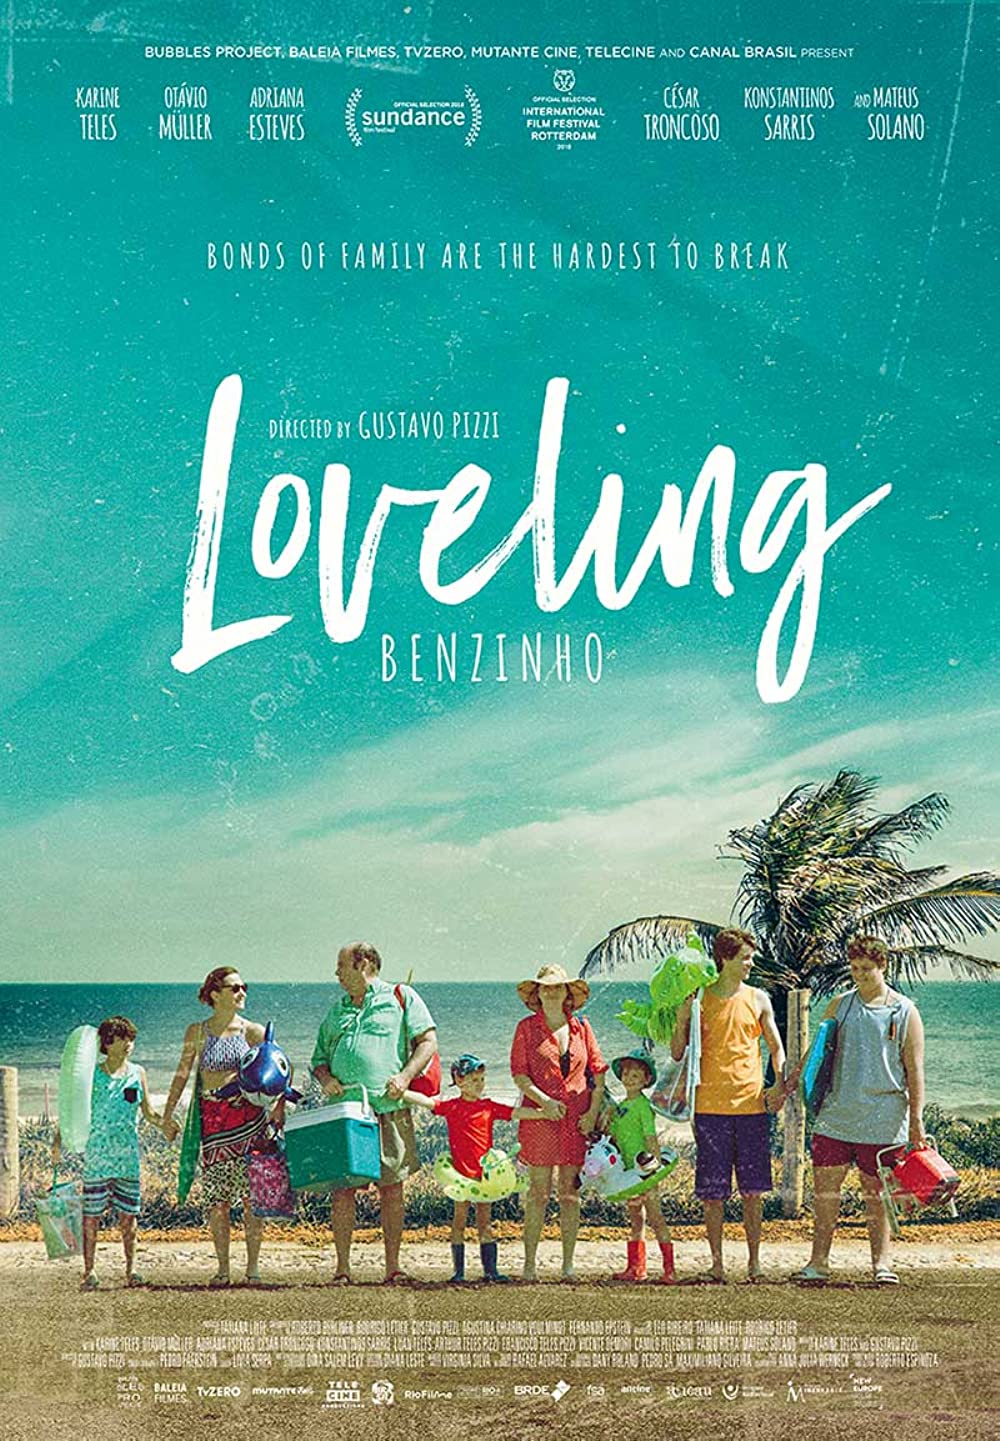 Filmbeschreibung zu Loveling